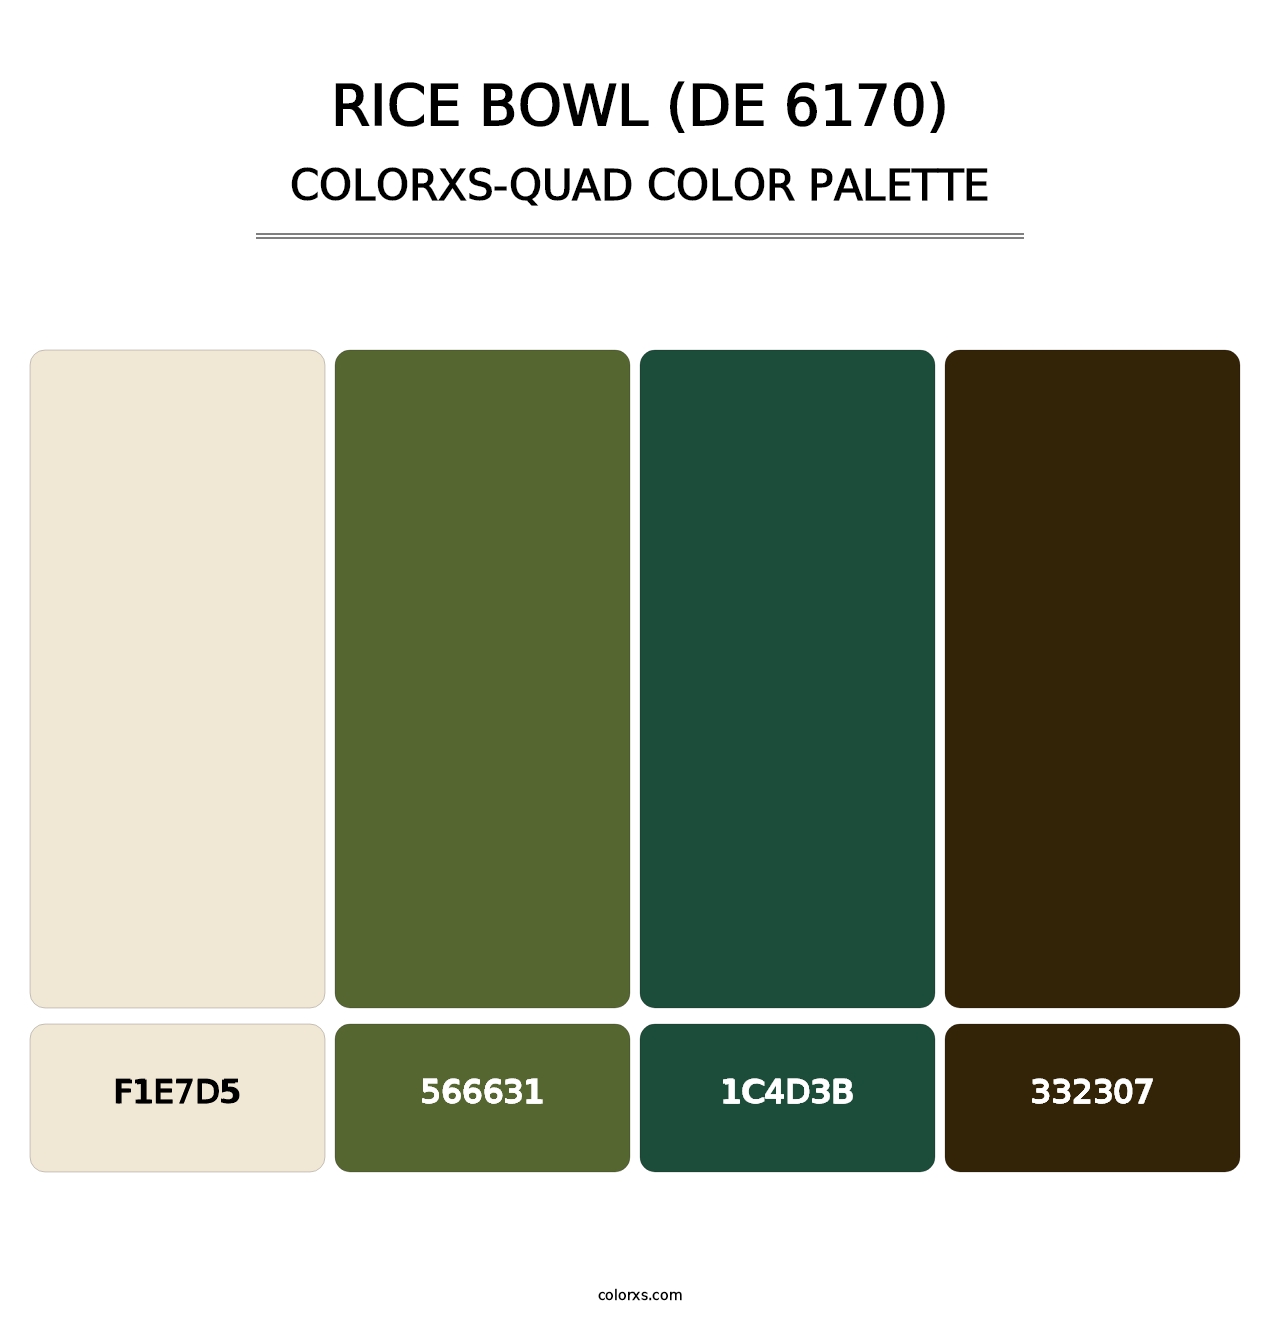 Rice Bowl (DE 6170) - Colorxs Quad Palette